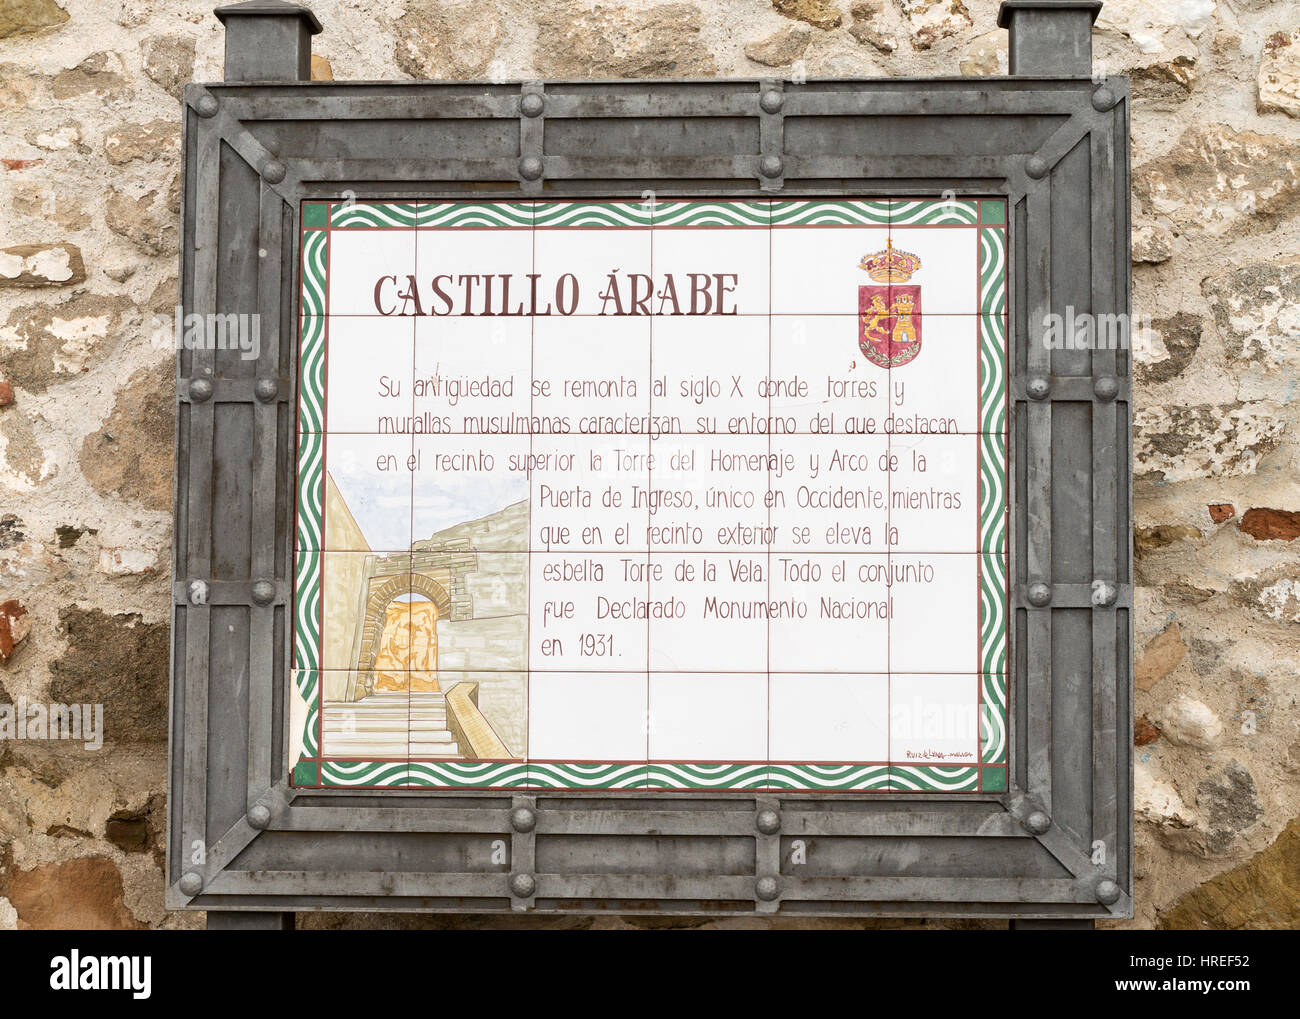 Ceramic tiled sign outside the Arab castle or Castillo Arabe, Alora, Spain, Europe Stock Photo